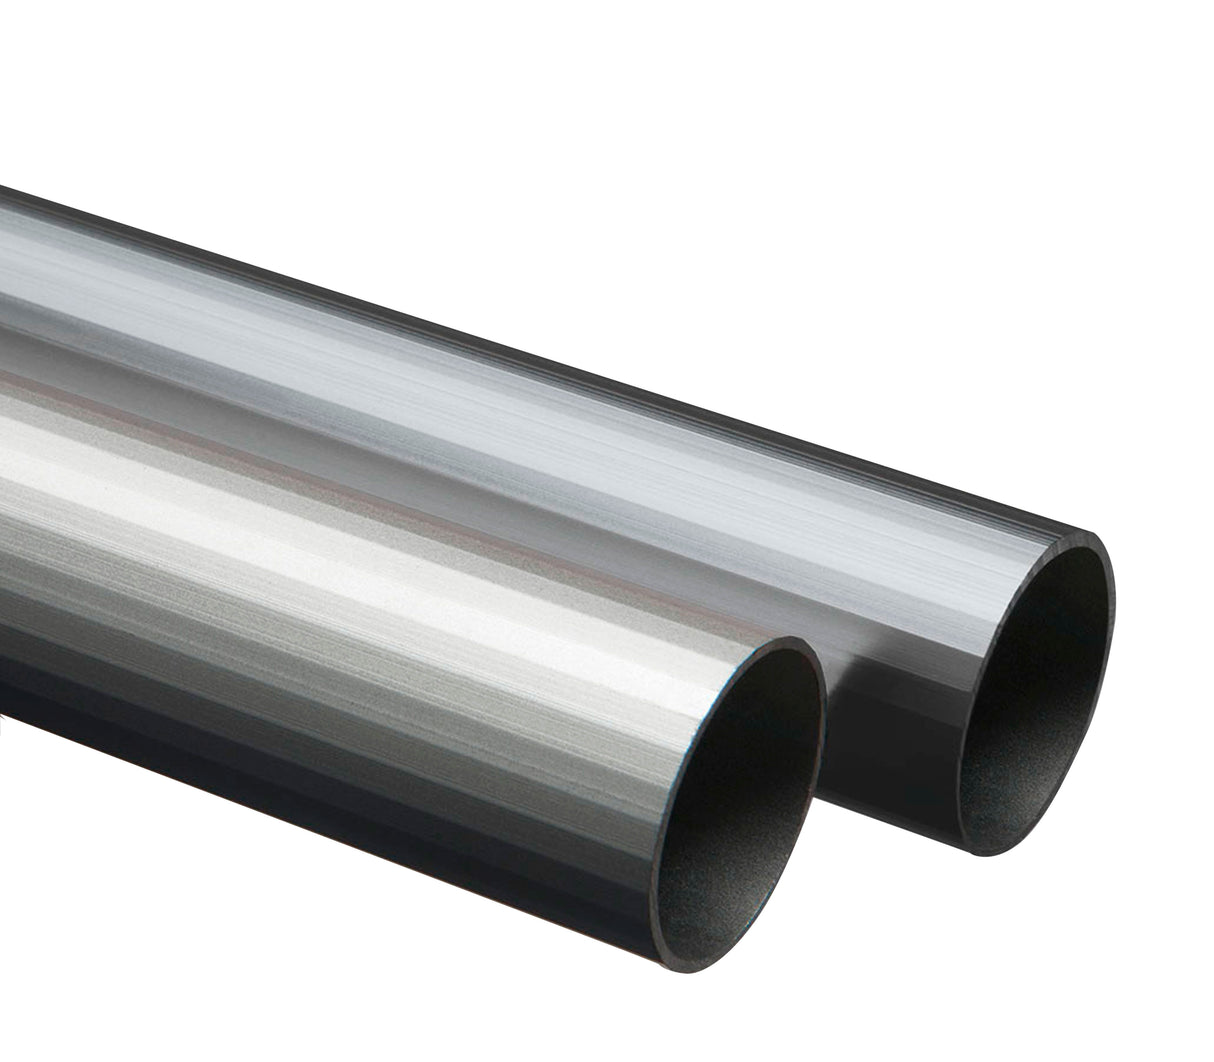 Tubo redondo de aluminio 10mm x 3m Tauro